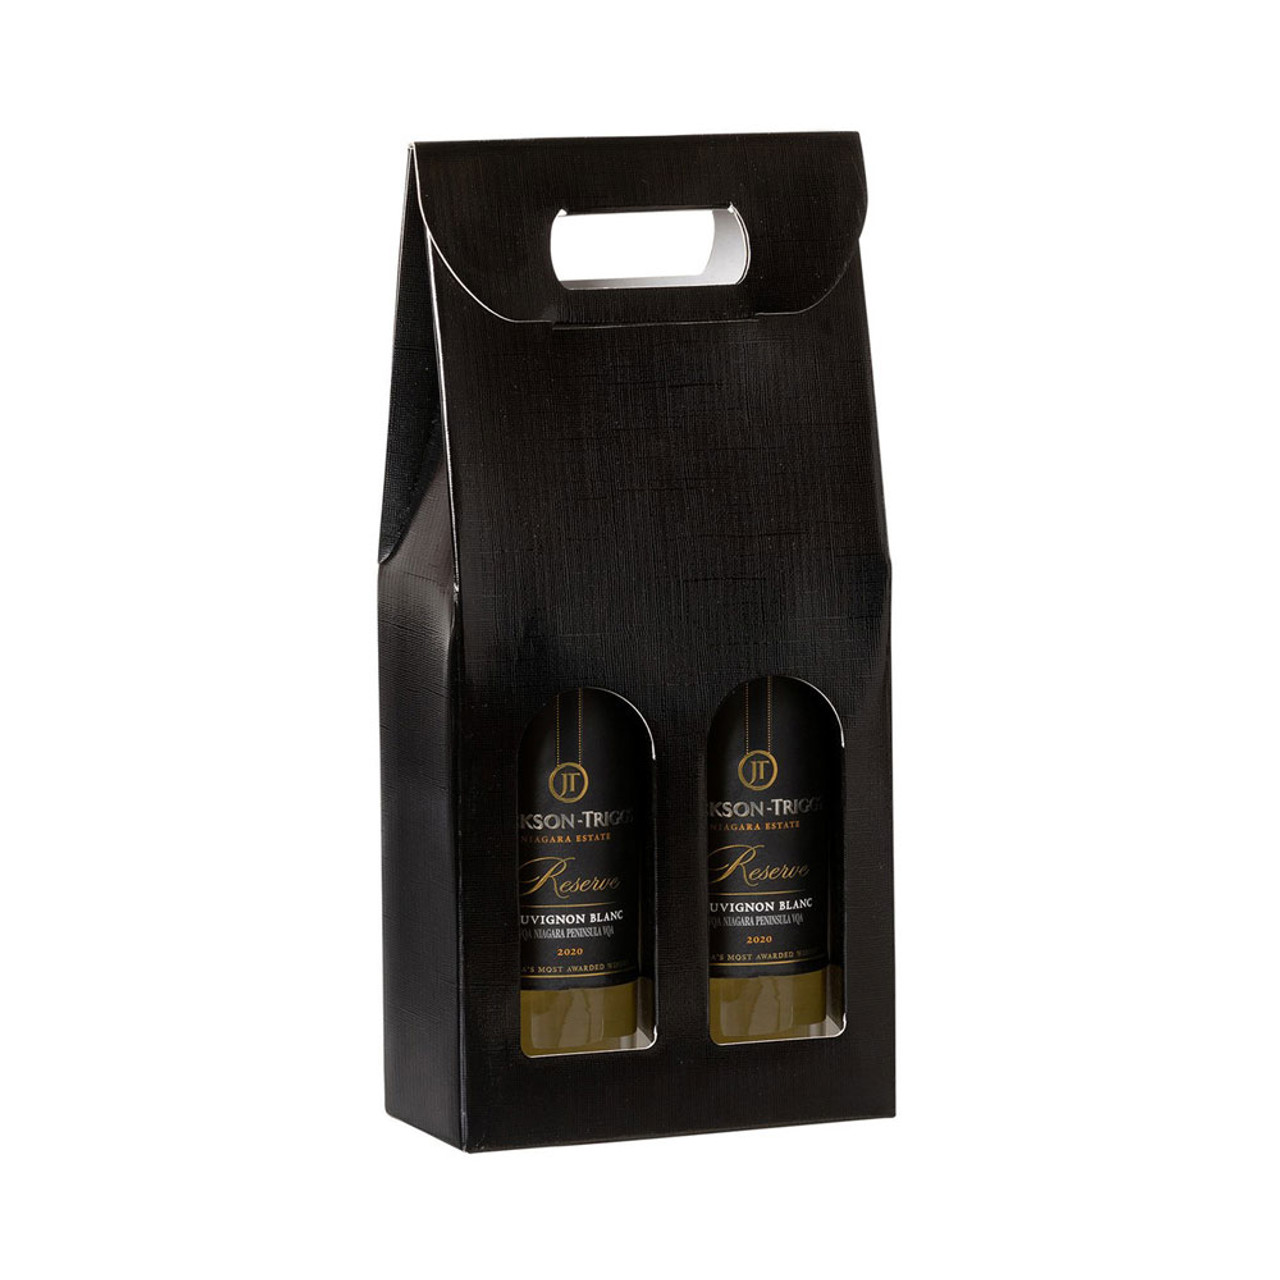 2 Bottle Gloss Black Wine Bottle Box Carrier - 7 1/4" x 3 1/2" x 15"